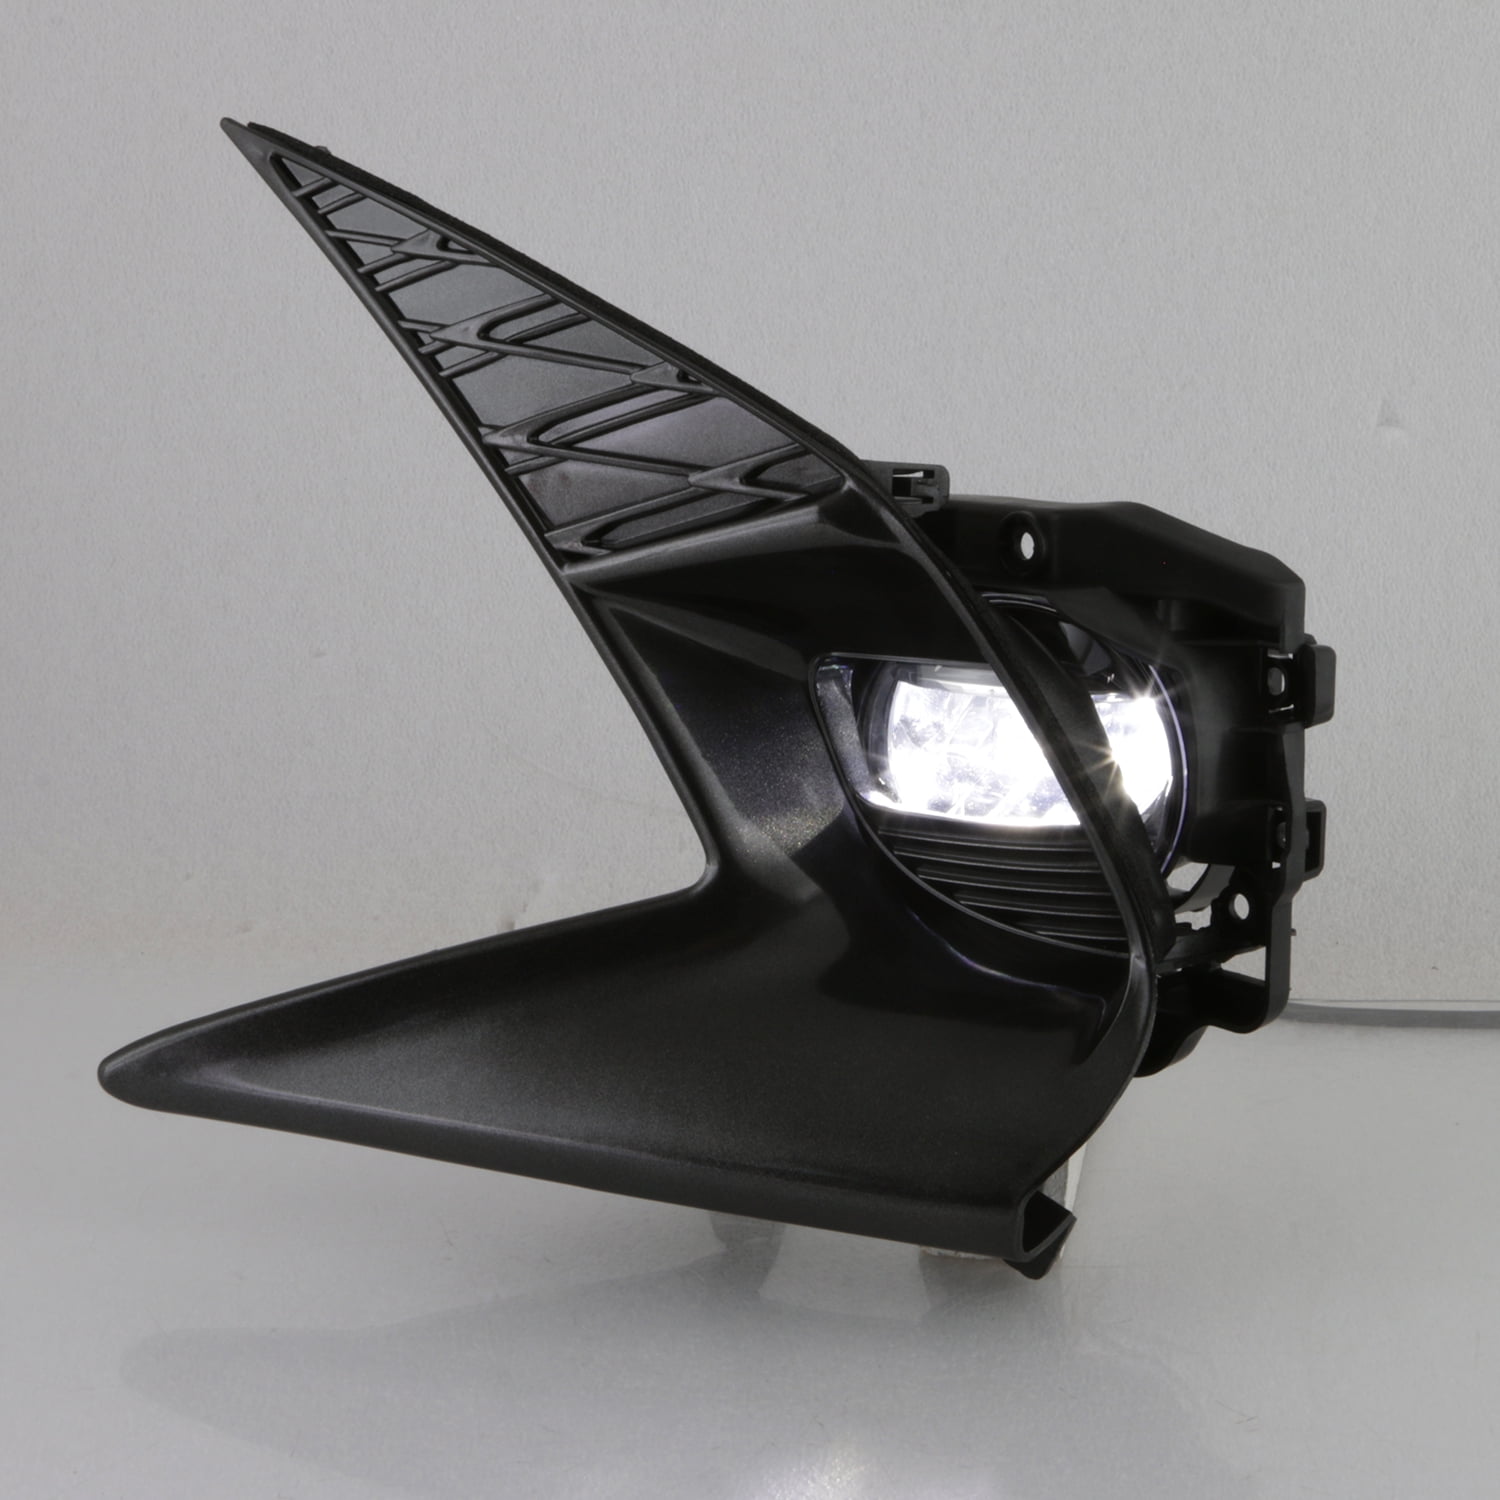 Fog Driving Light Kit Built-in LED For 2011-2016 Lexus GS350 GS450h GS460 GS200t